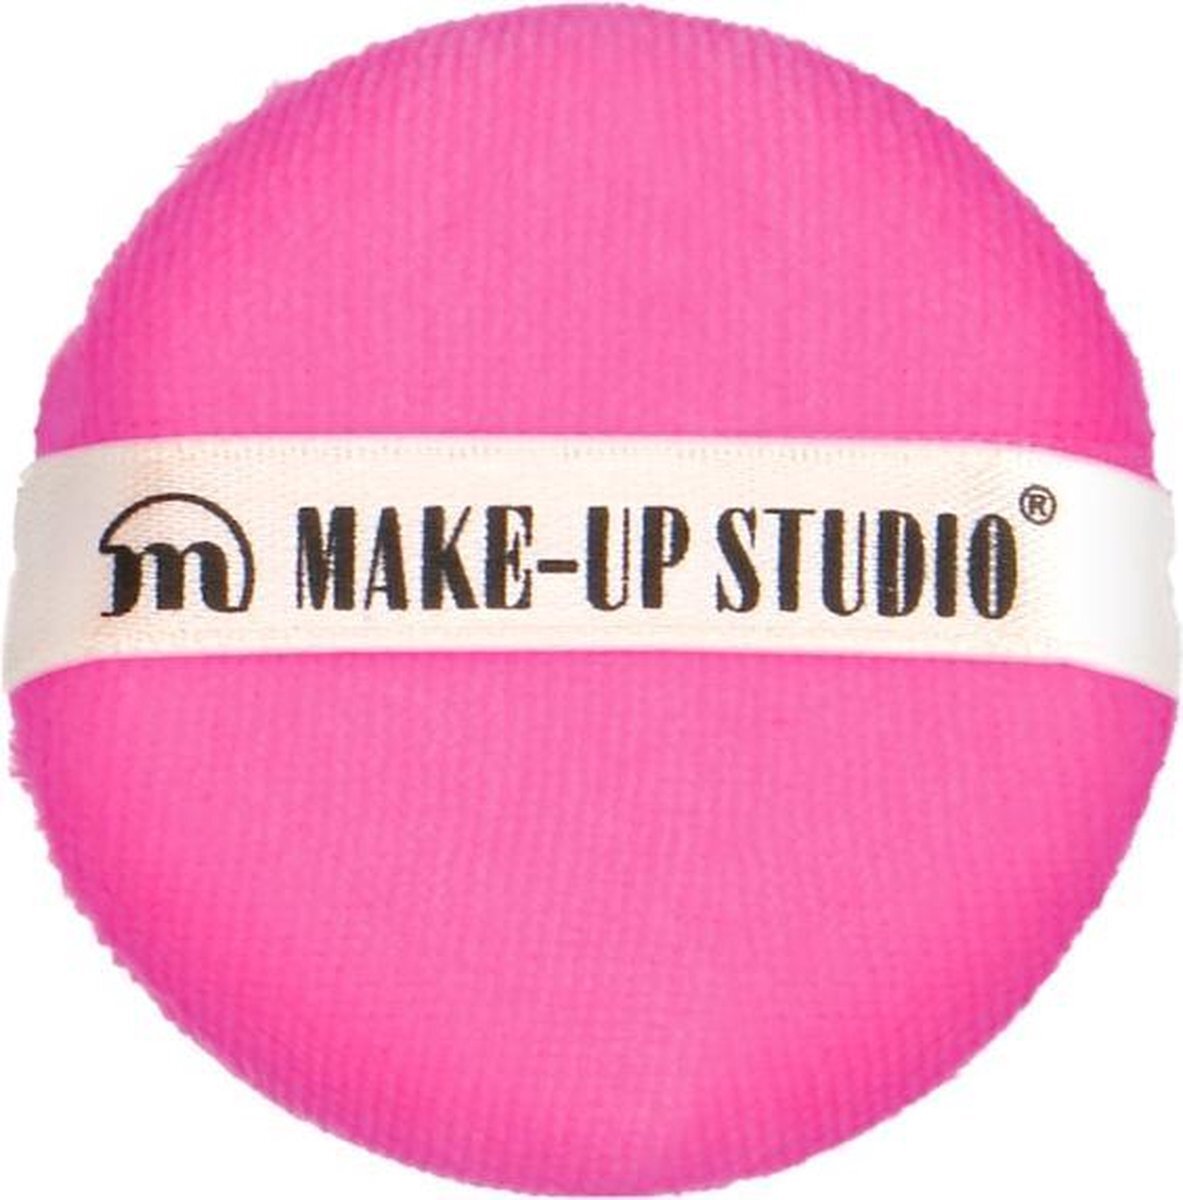 Make-up Studio Powder Puff Poederspons - Dark Pink/Roze